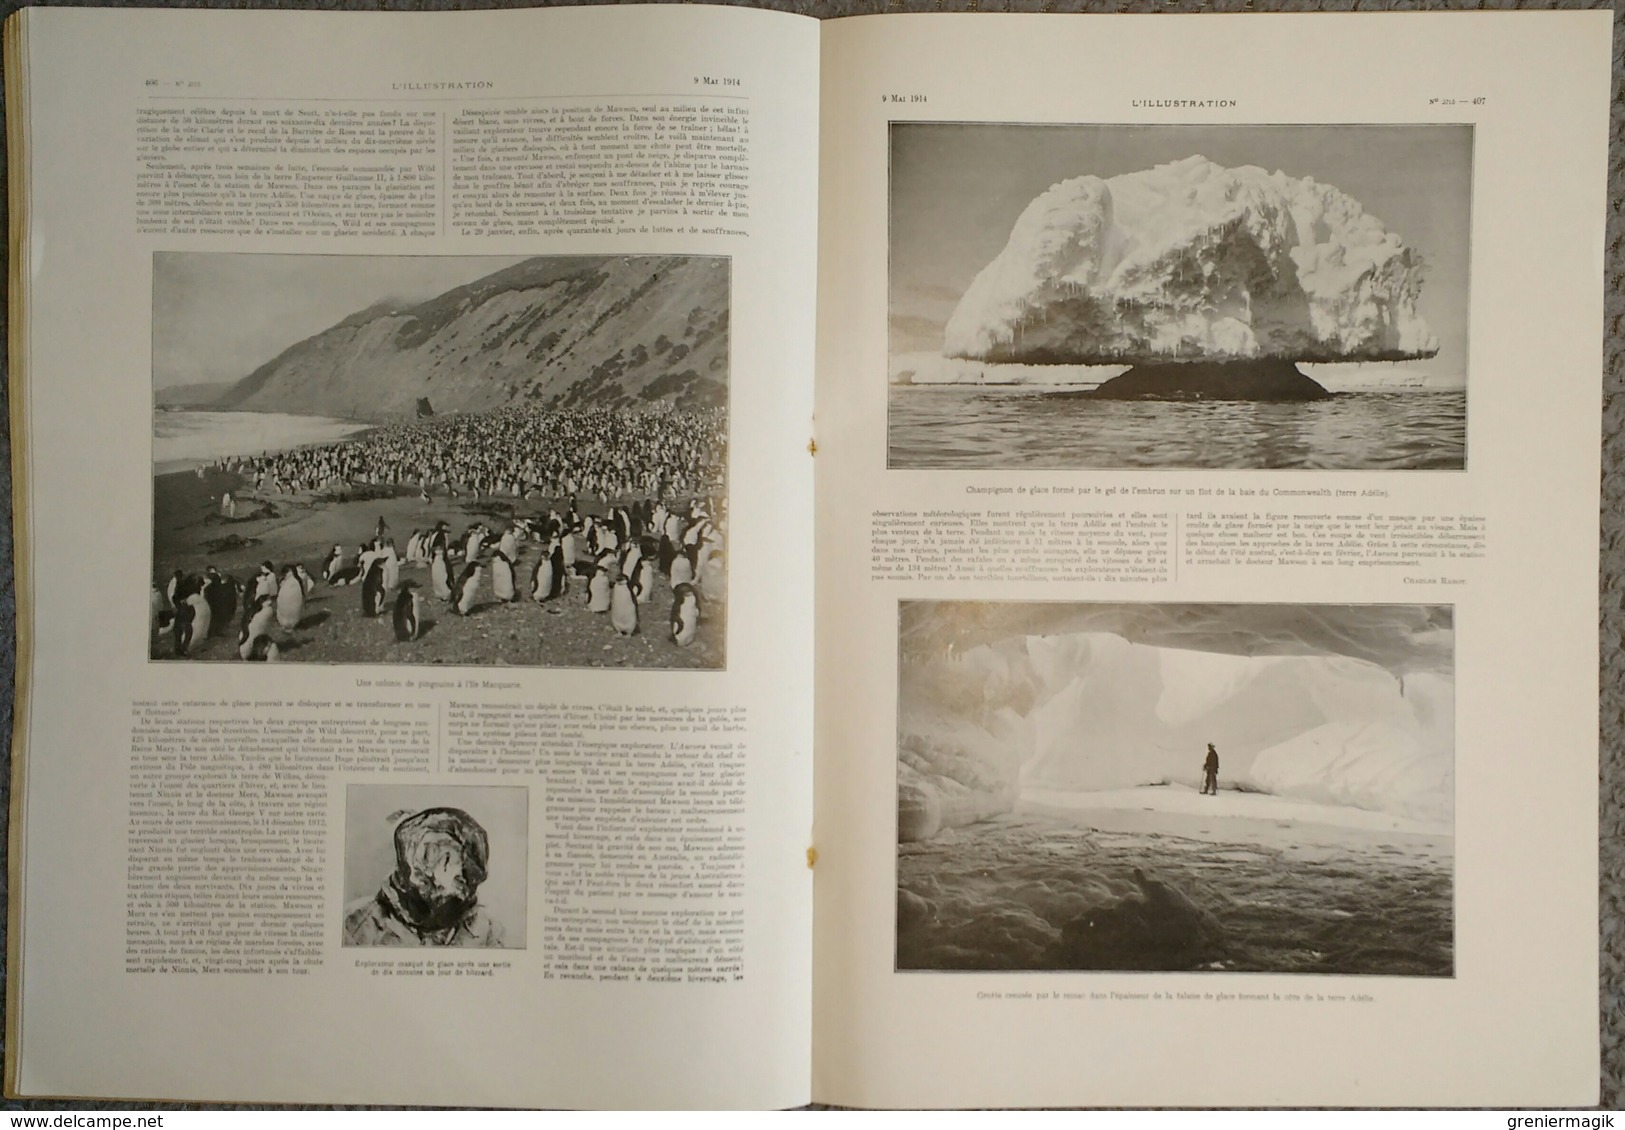 L'Illustration 3715 9 mai 1914 François Joseph/Zapata Vera-Cruz/Expédition polaire Mawson/Entre la Grèce et l'Albanie